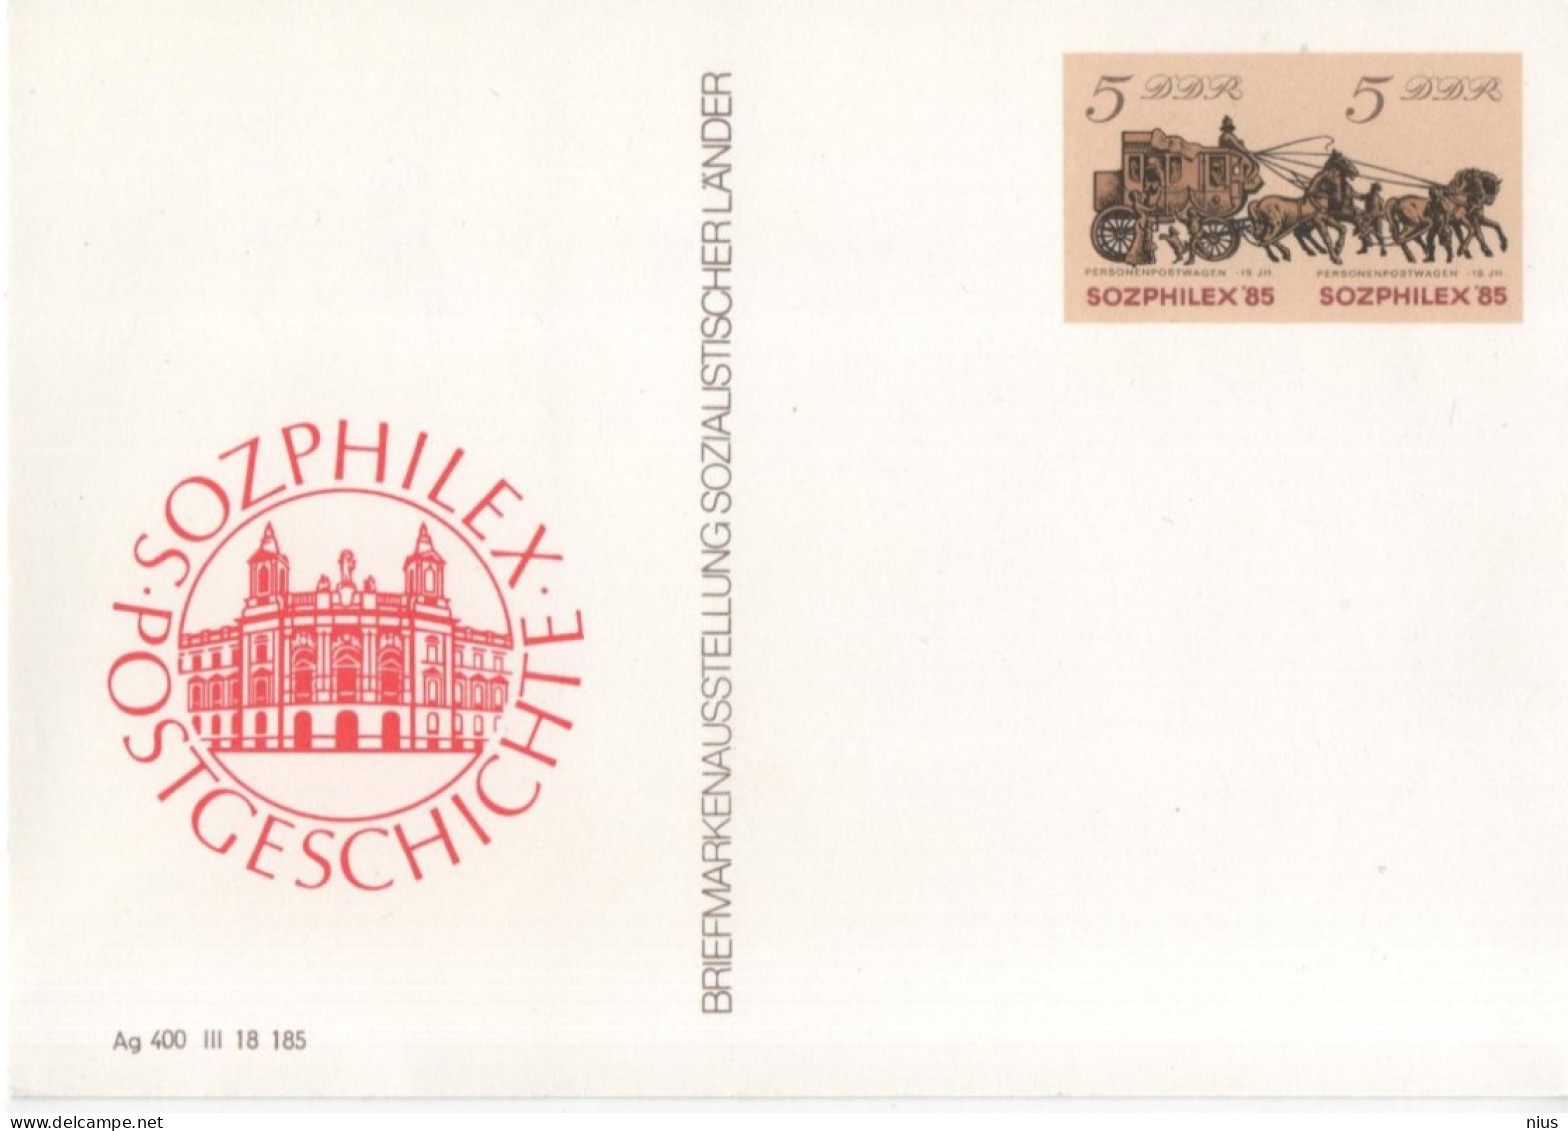 Germany DDR 1985 Briefmarkenausstellung Sozialistischer Lander Stamp Exhibition Of Socialist Countries, SOZPHILEX'85 - Postkaarten - Ongebruikt